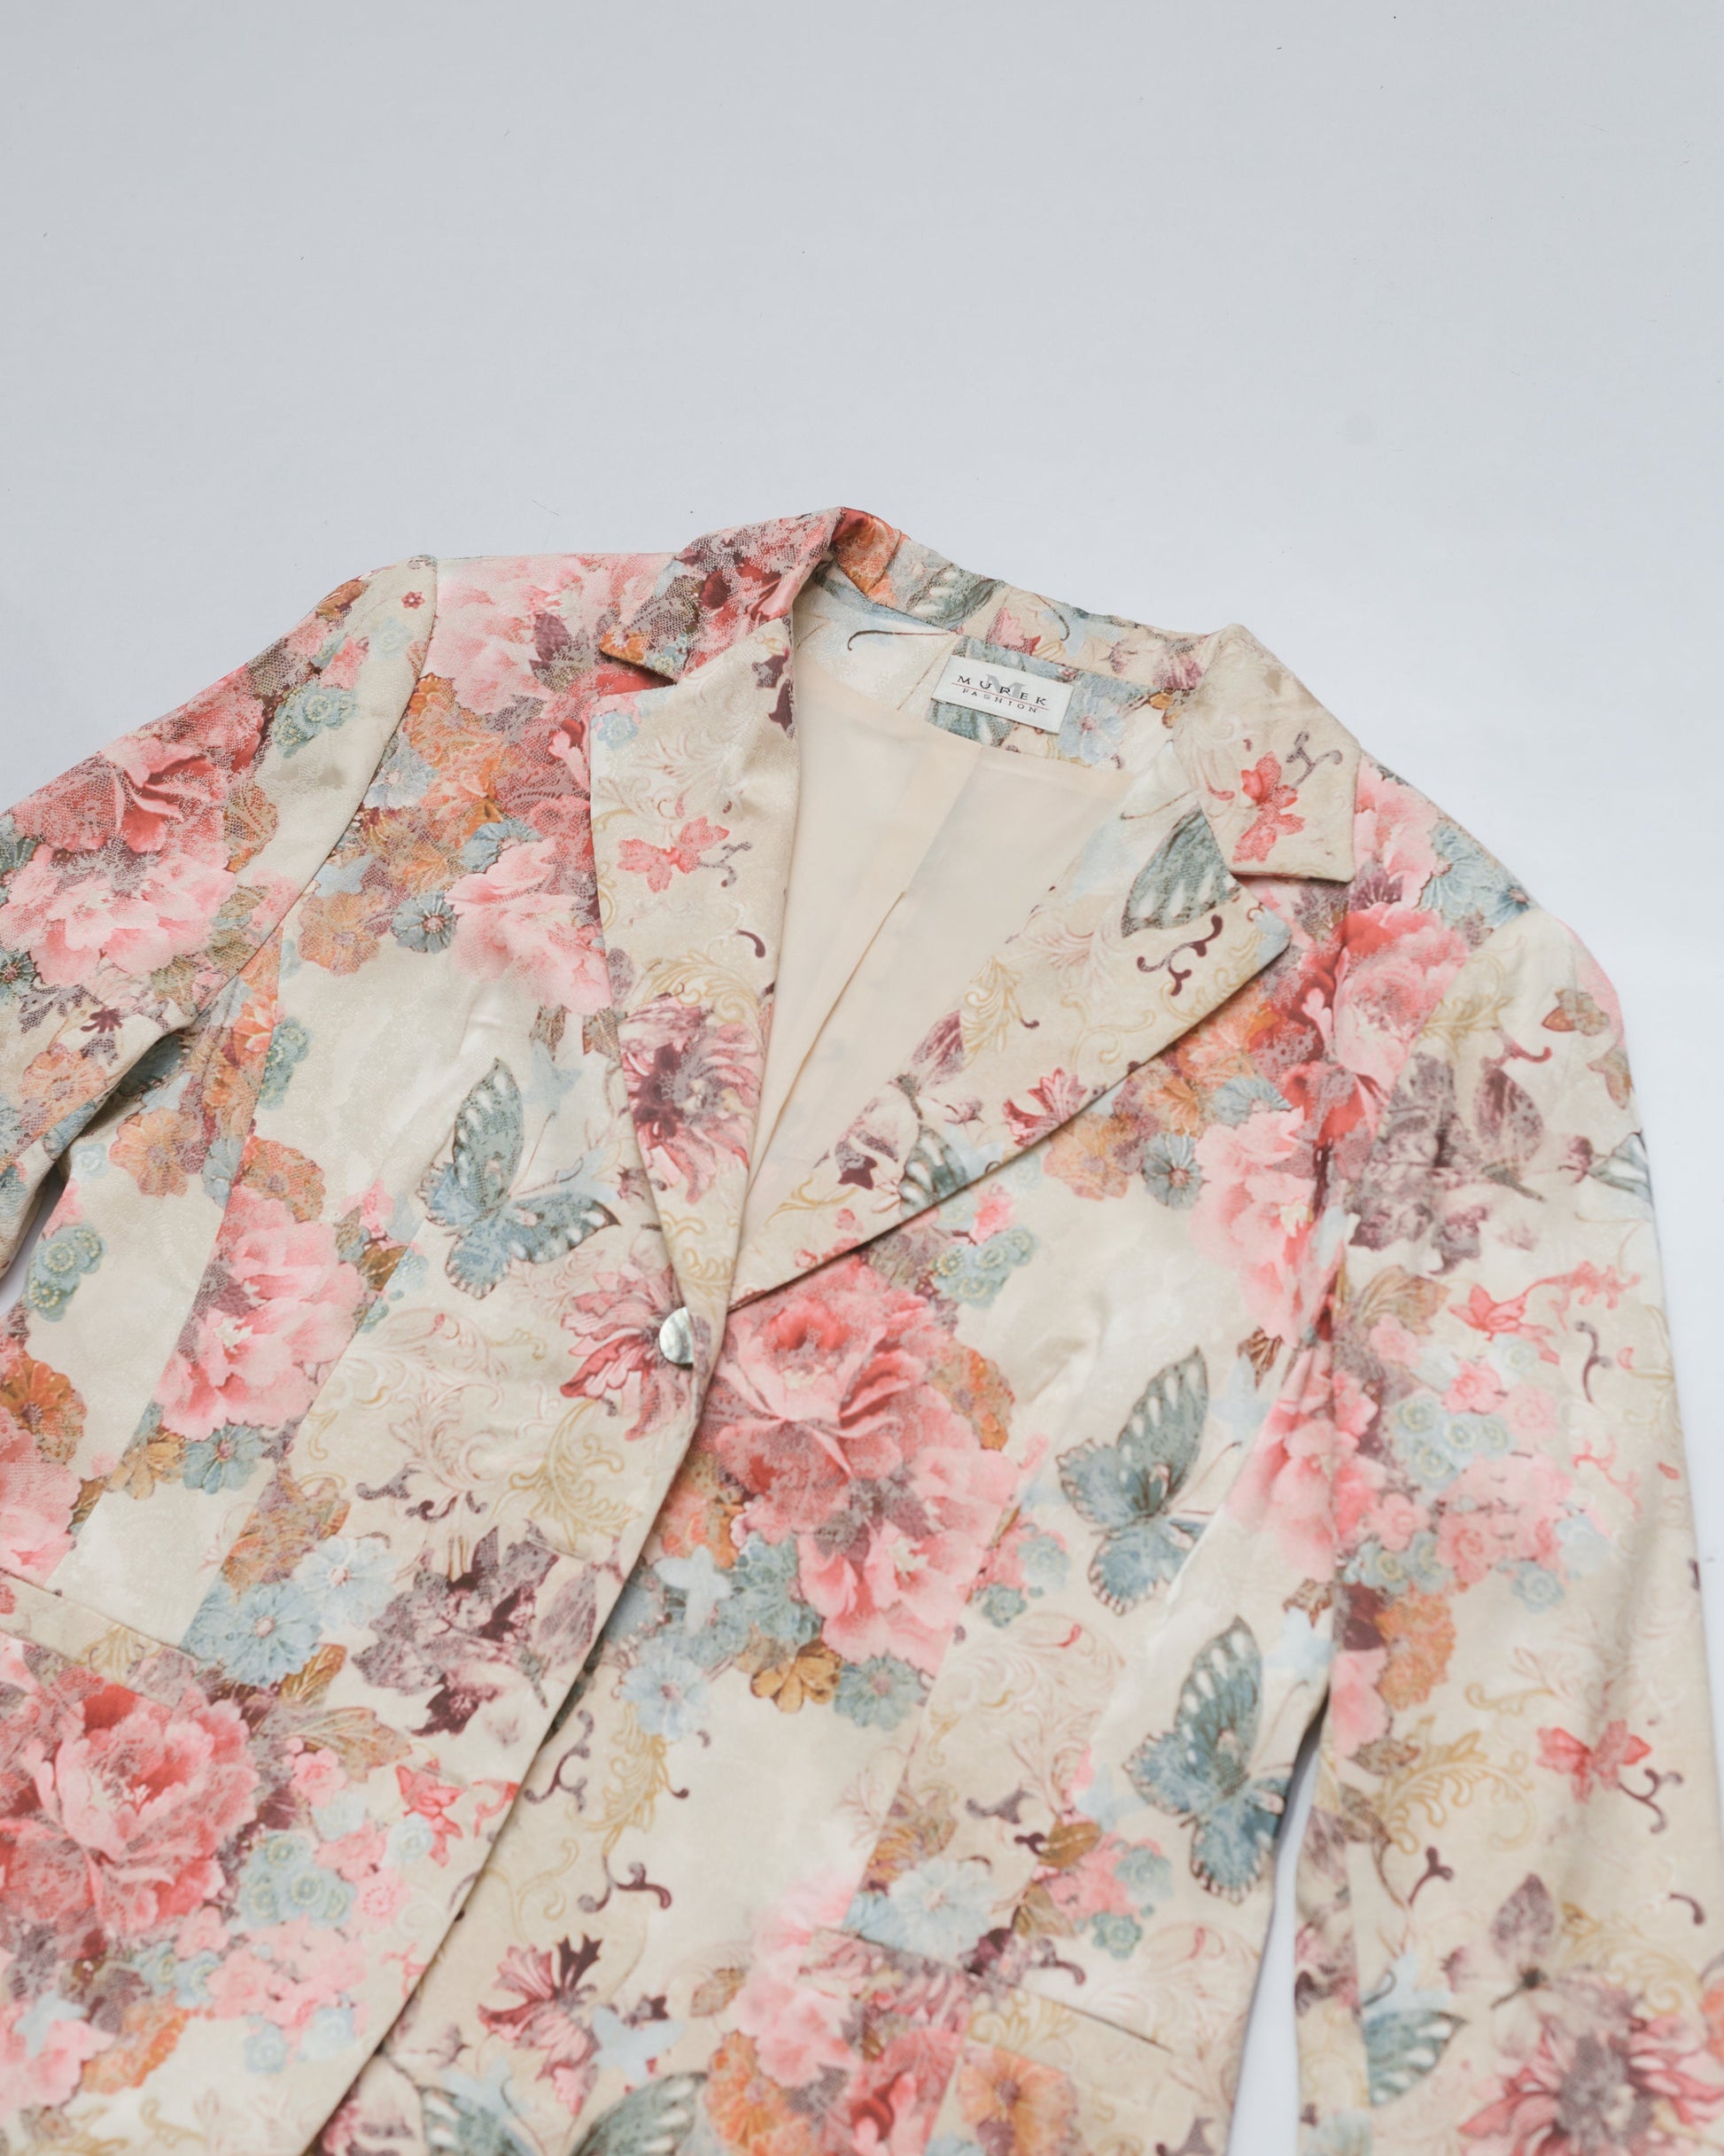 Floral lace & print jacquard blazer